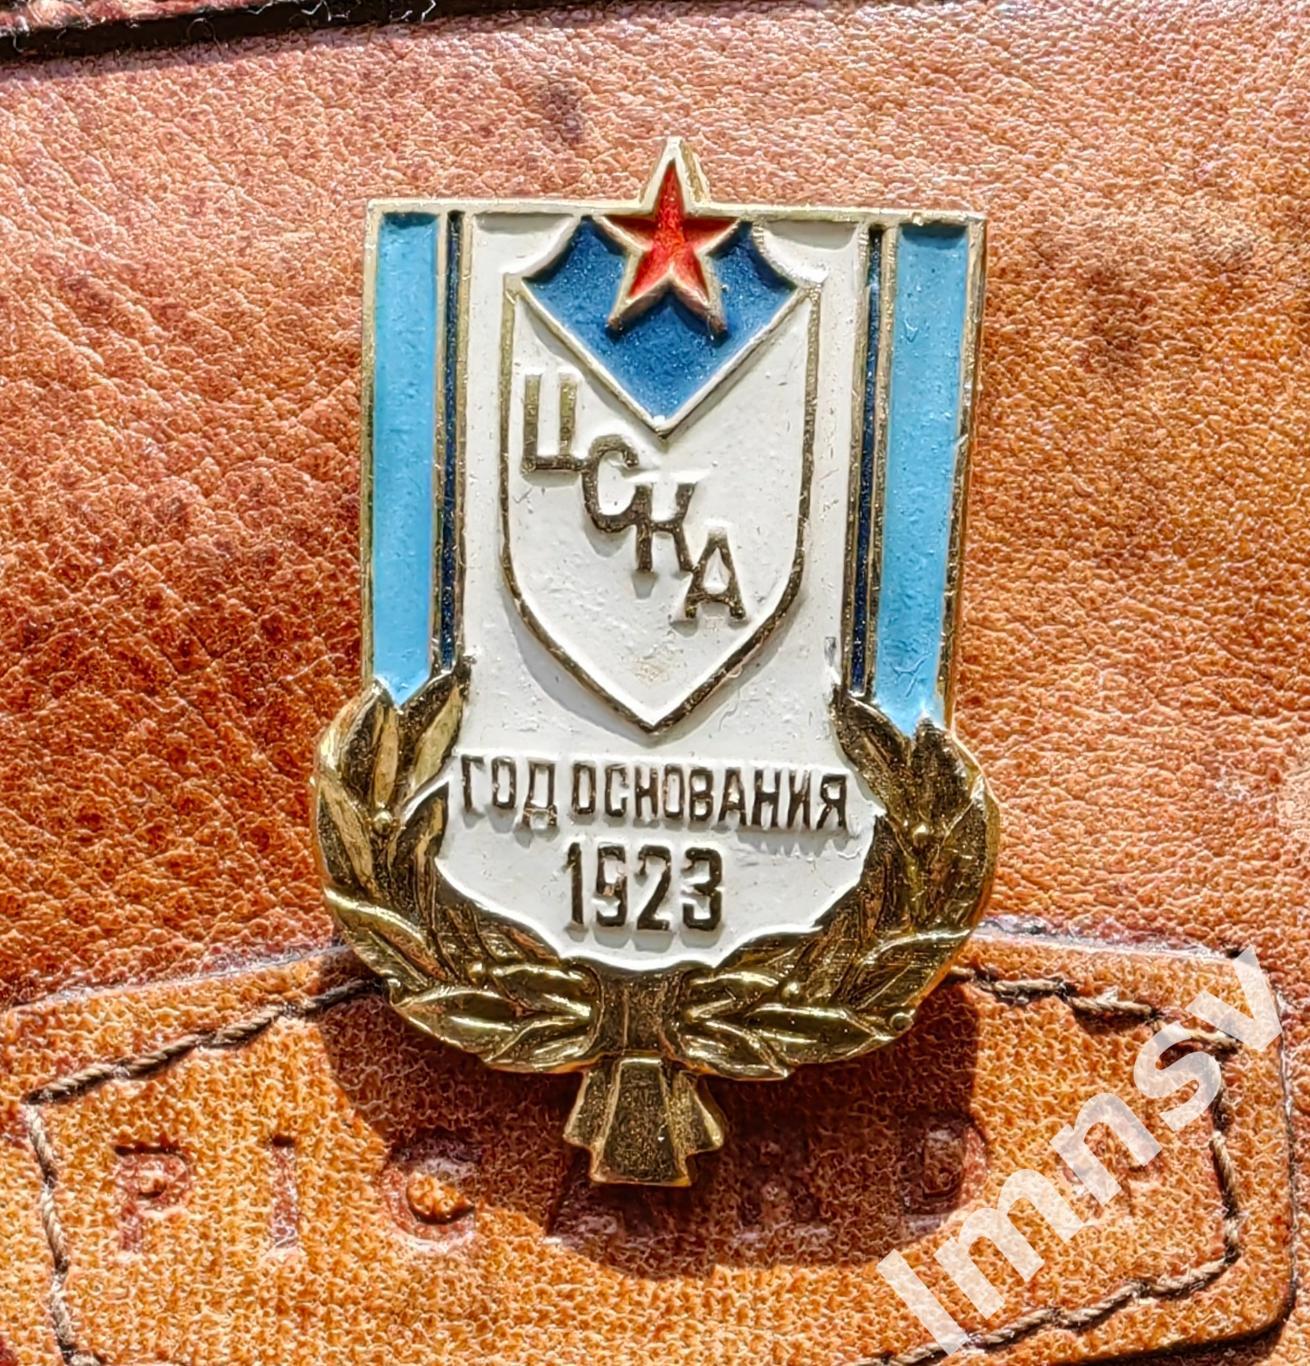 ЦСКА год основания 1923